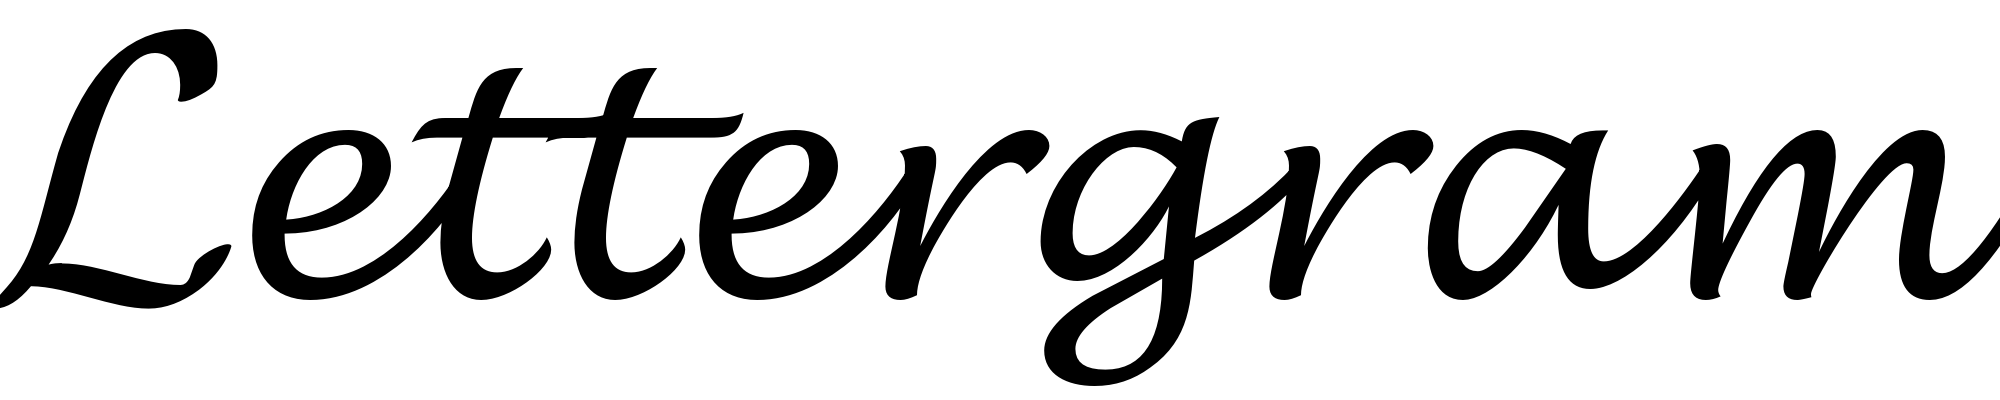 Lettergram Logo